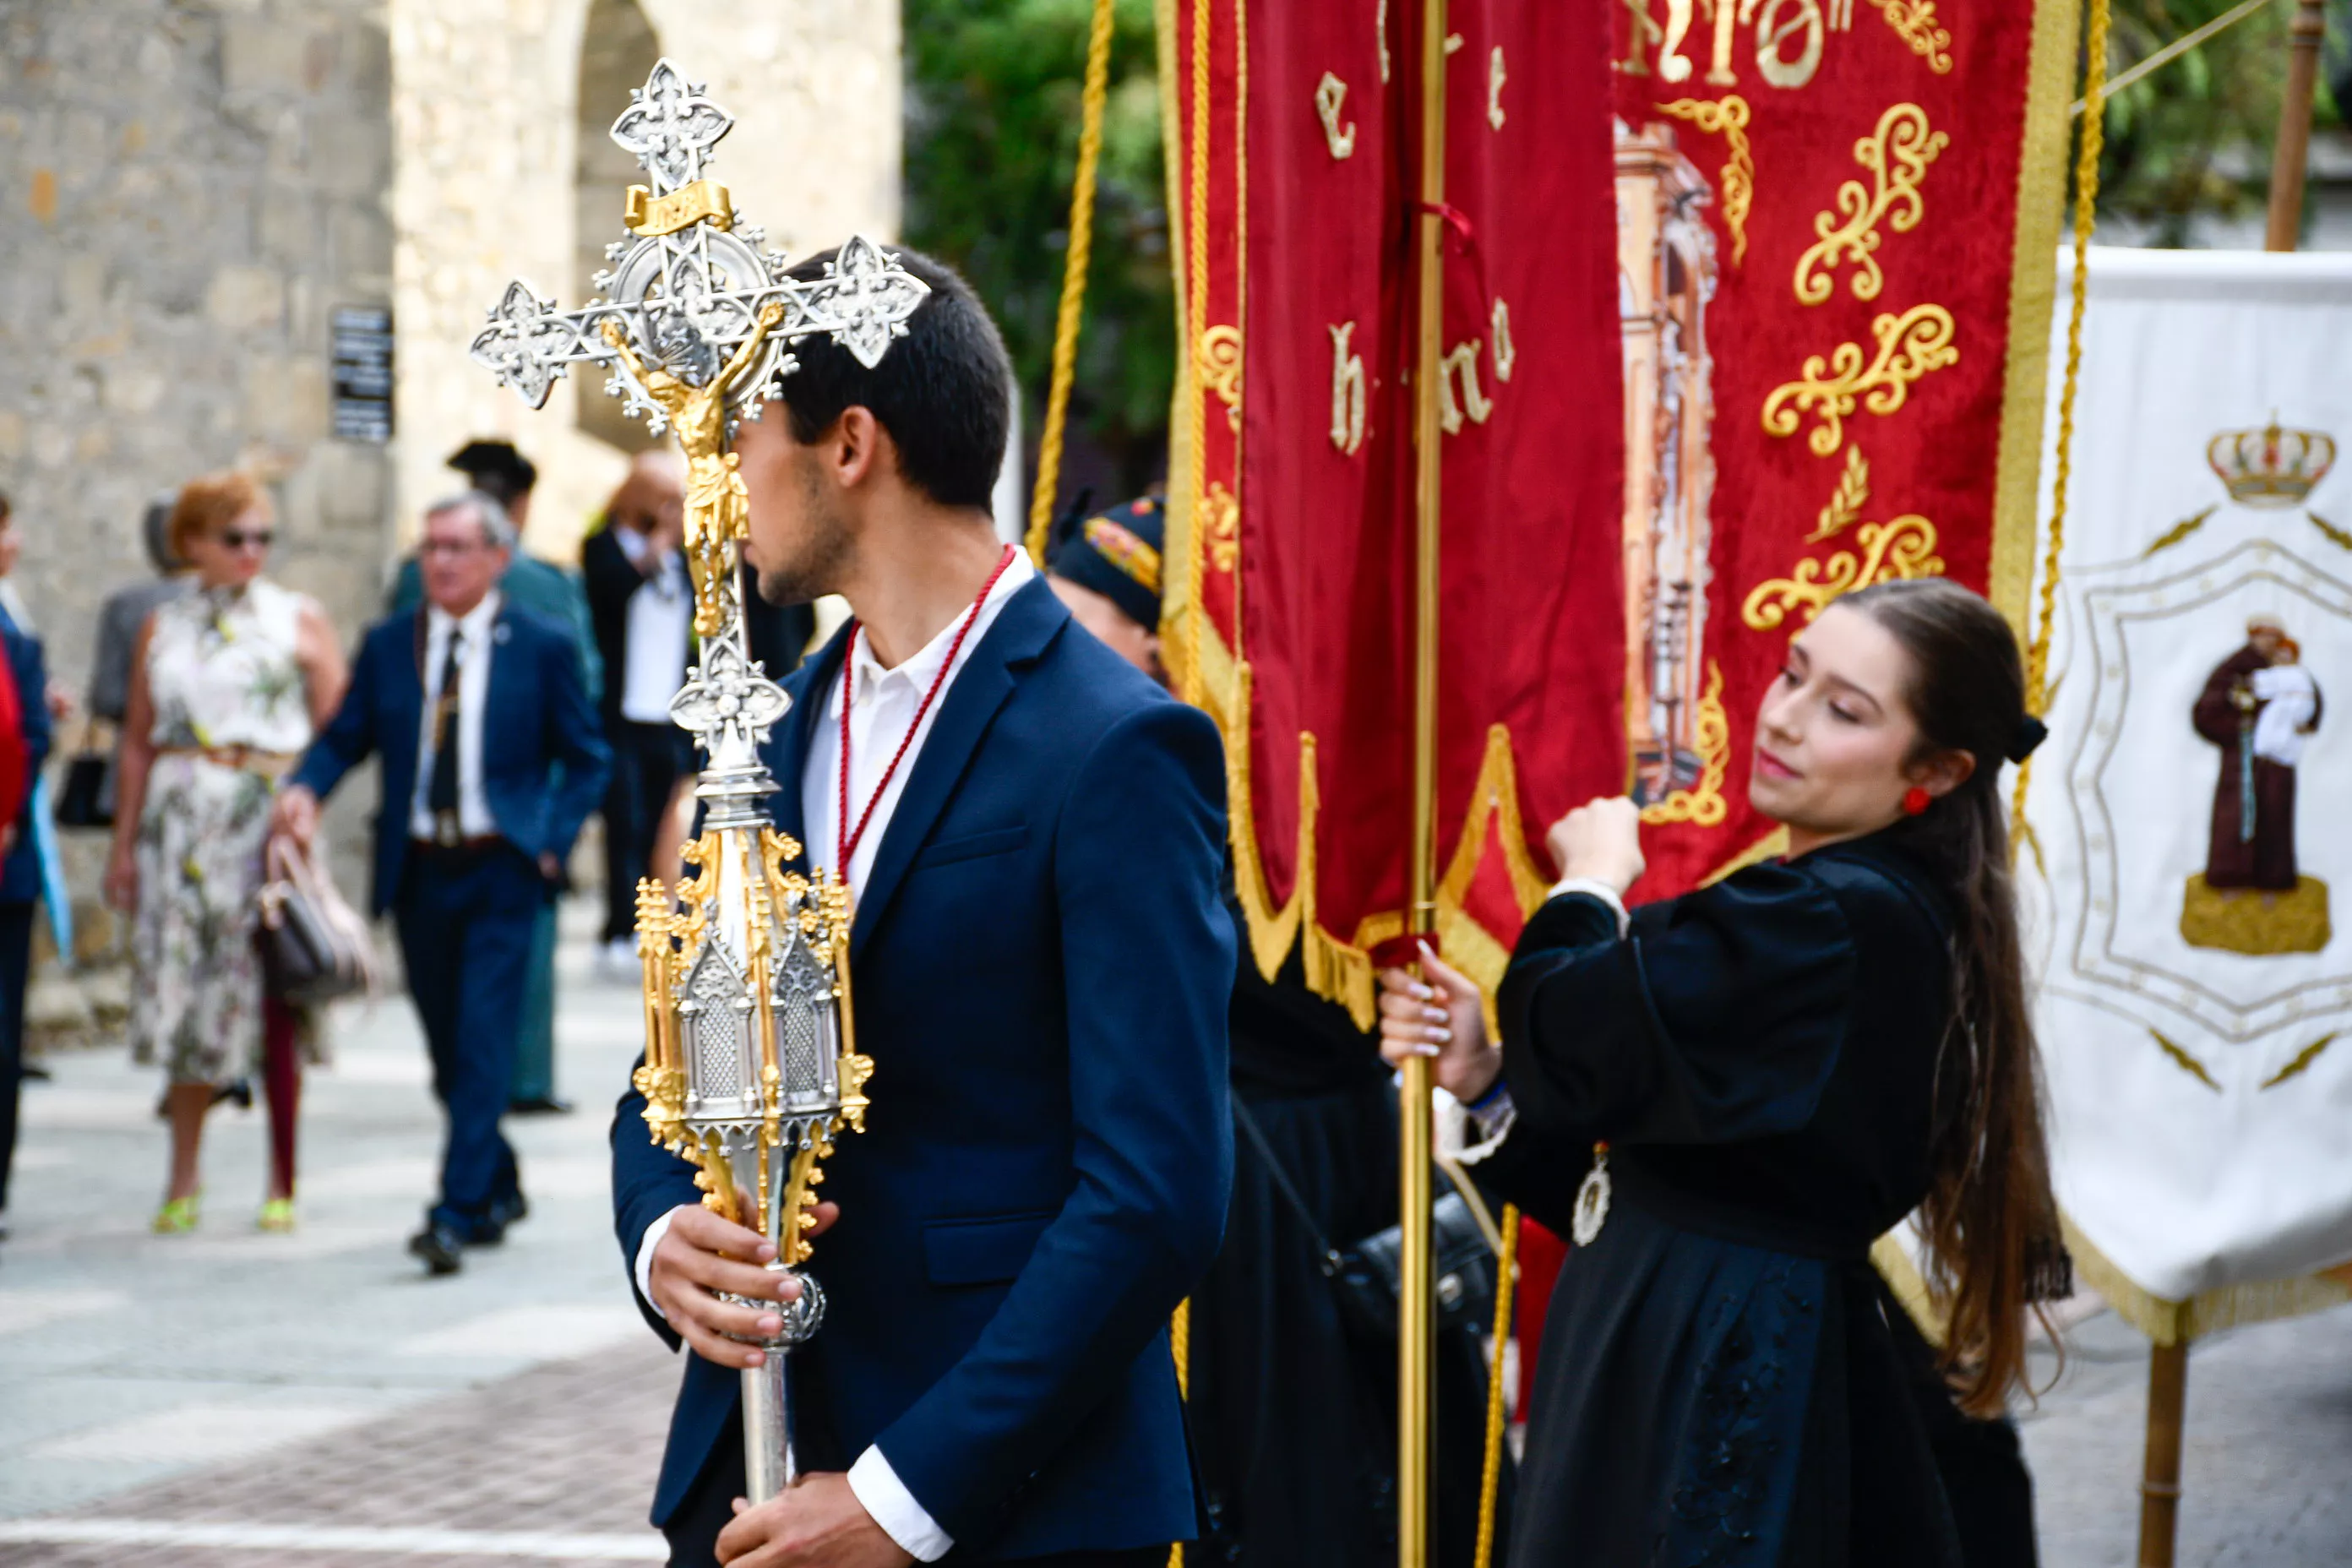  Tradicional procesión y comitiva de autoridades en el día del Cristín de Bembibre  (79)